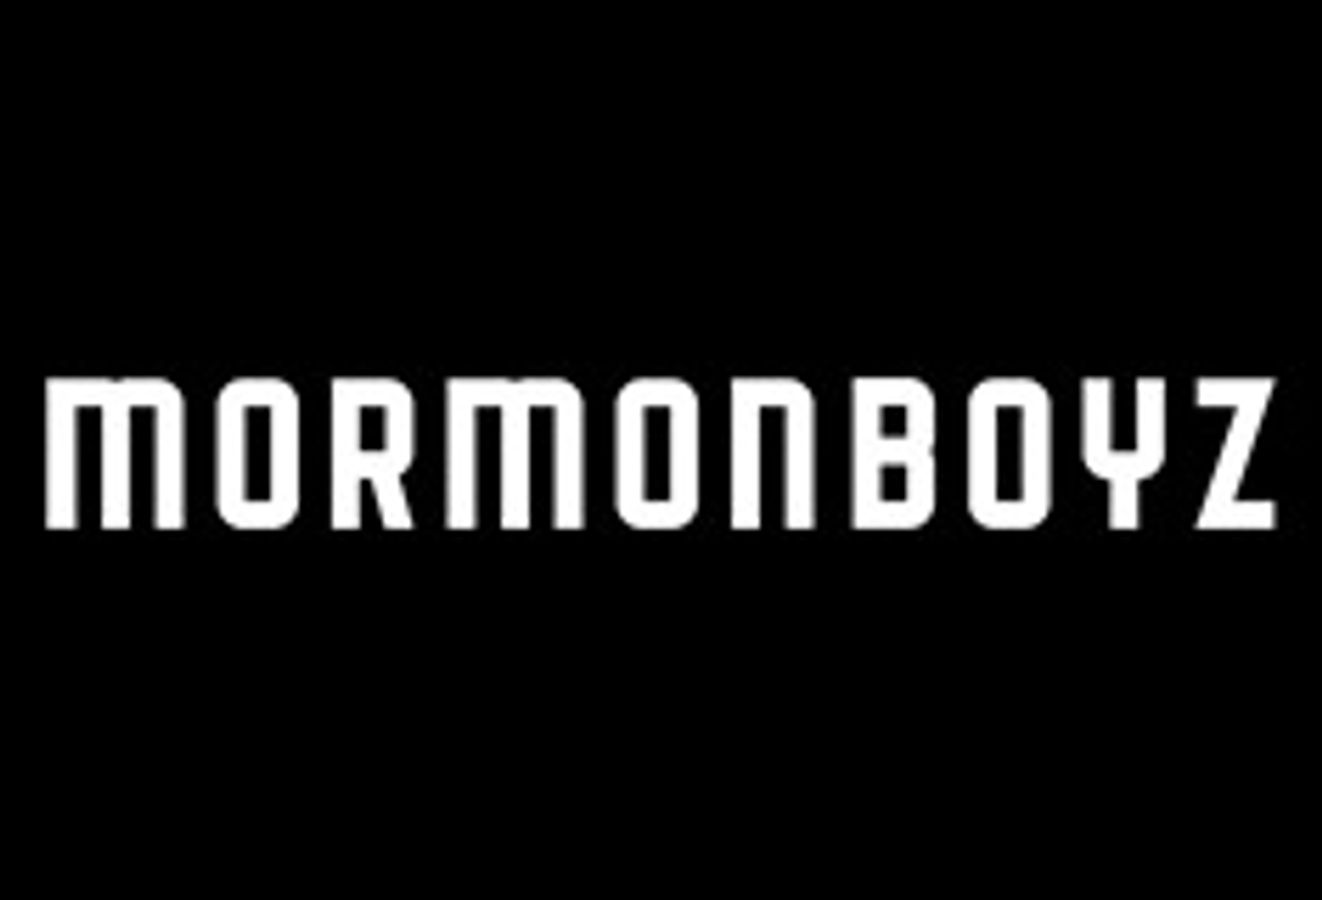 Mormonboyz.com